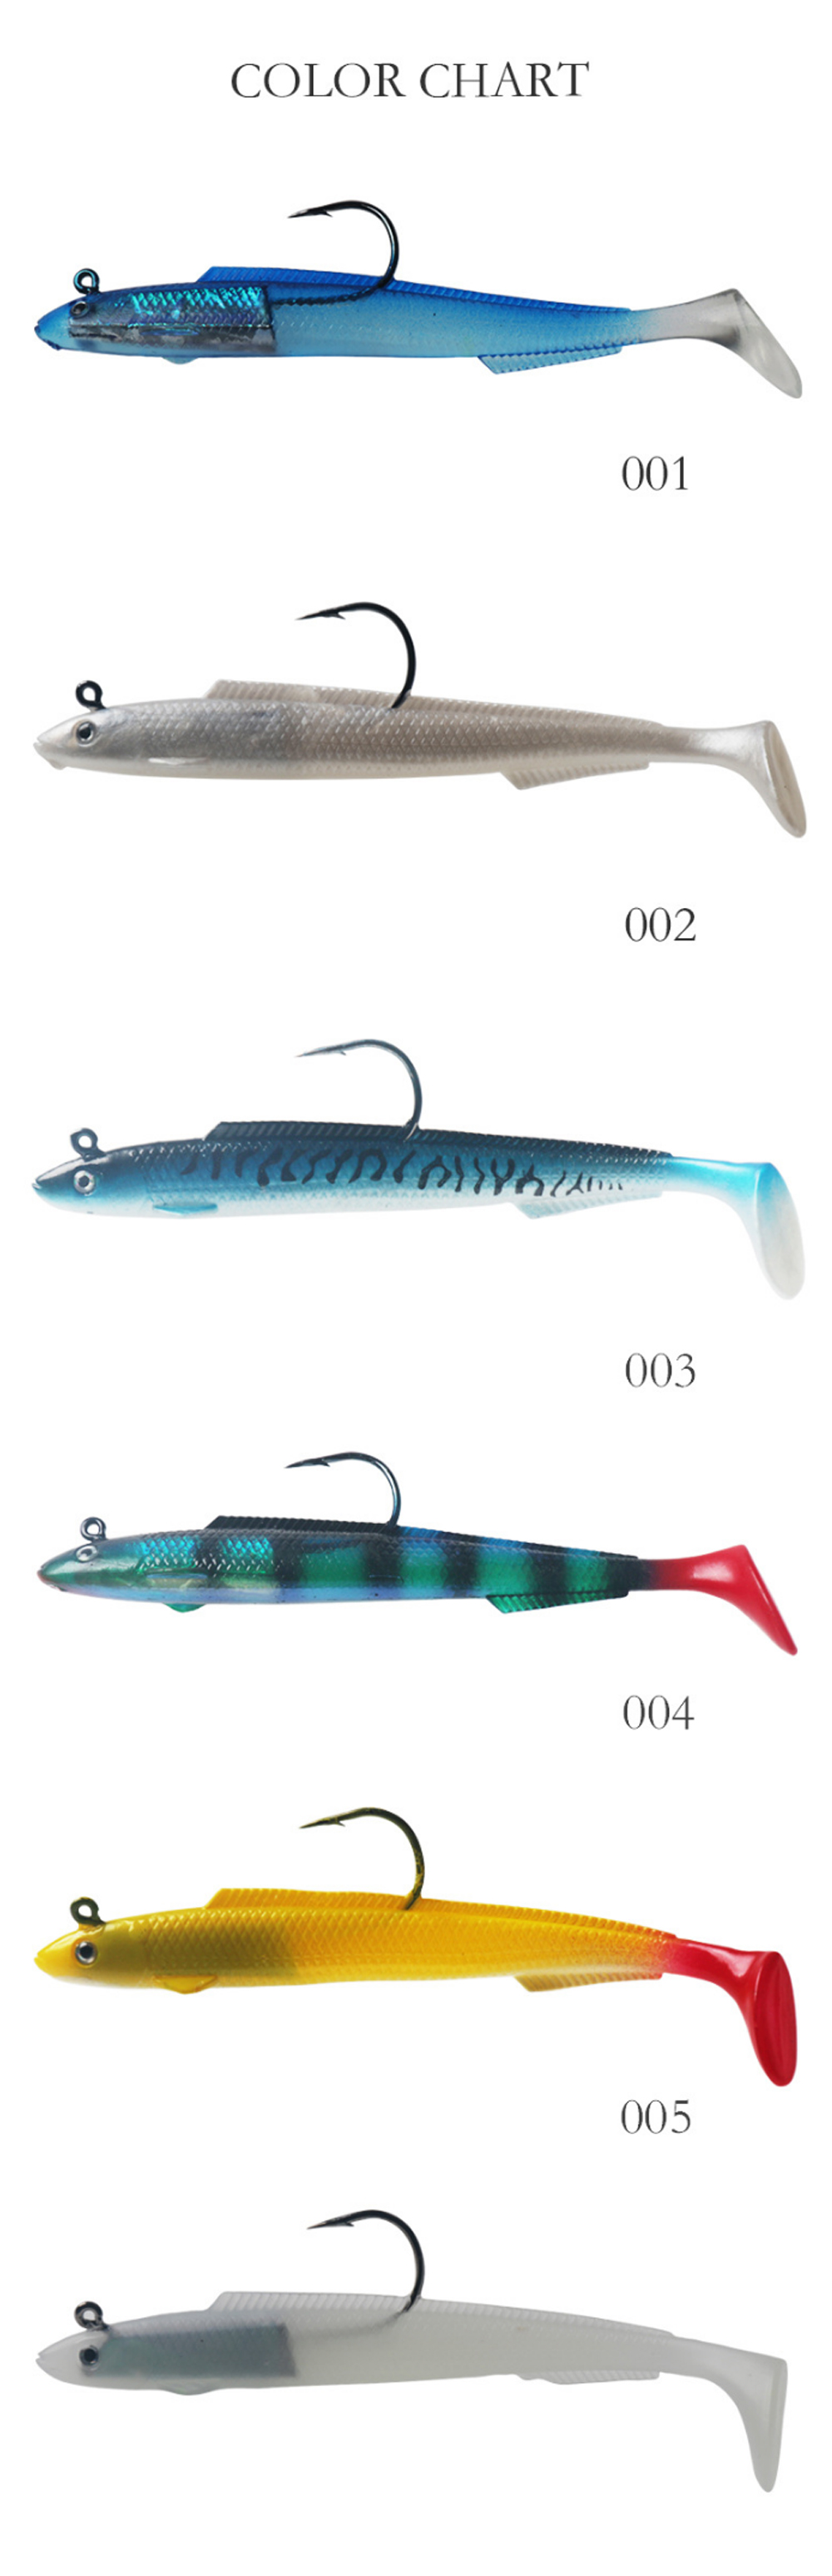 1-Pcs-Fishing-Lures-15cm-30g-Luminous-Artificial-Fishing-Baits-Outdoor-Fishing-Tackle-1743949-2